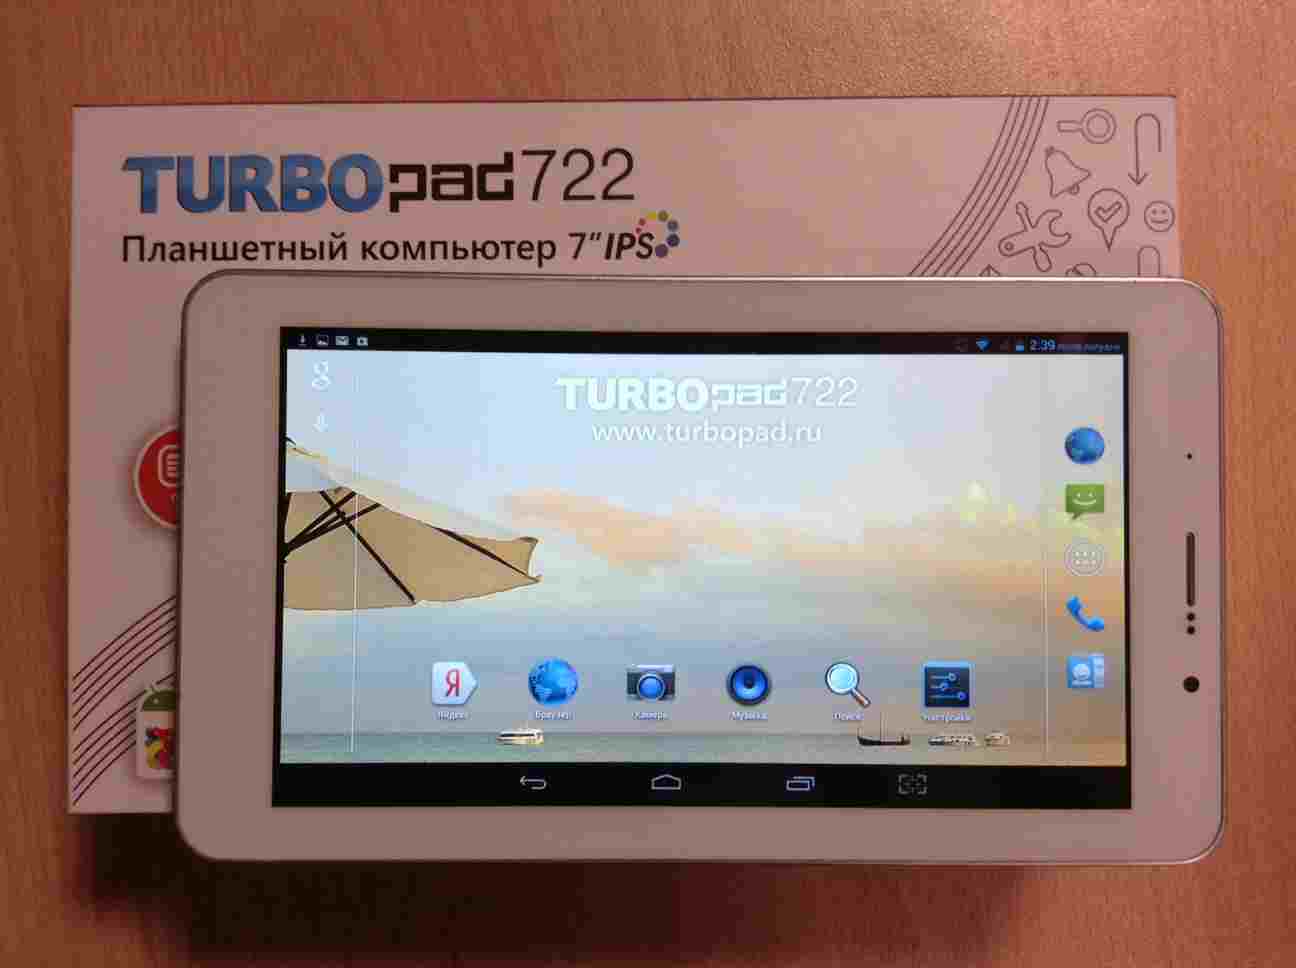 Обзор TurboPad 722 – отзывчивость и лёгкость